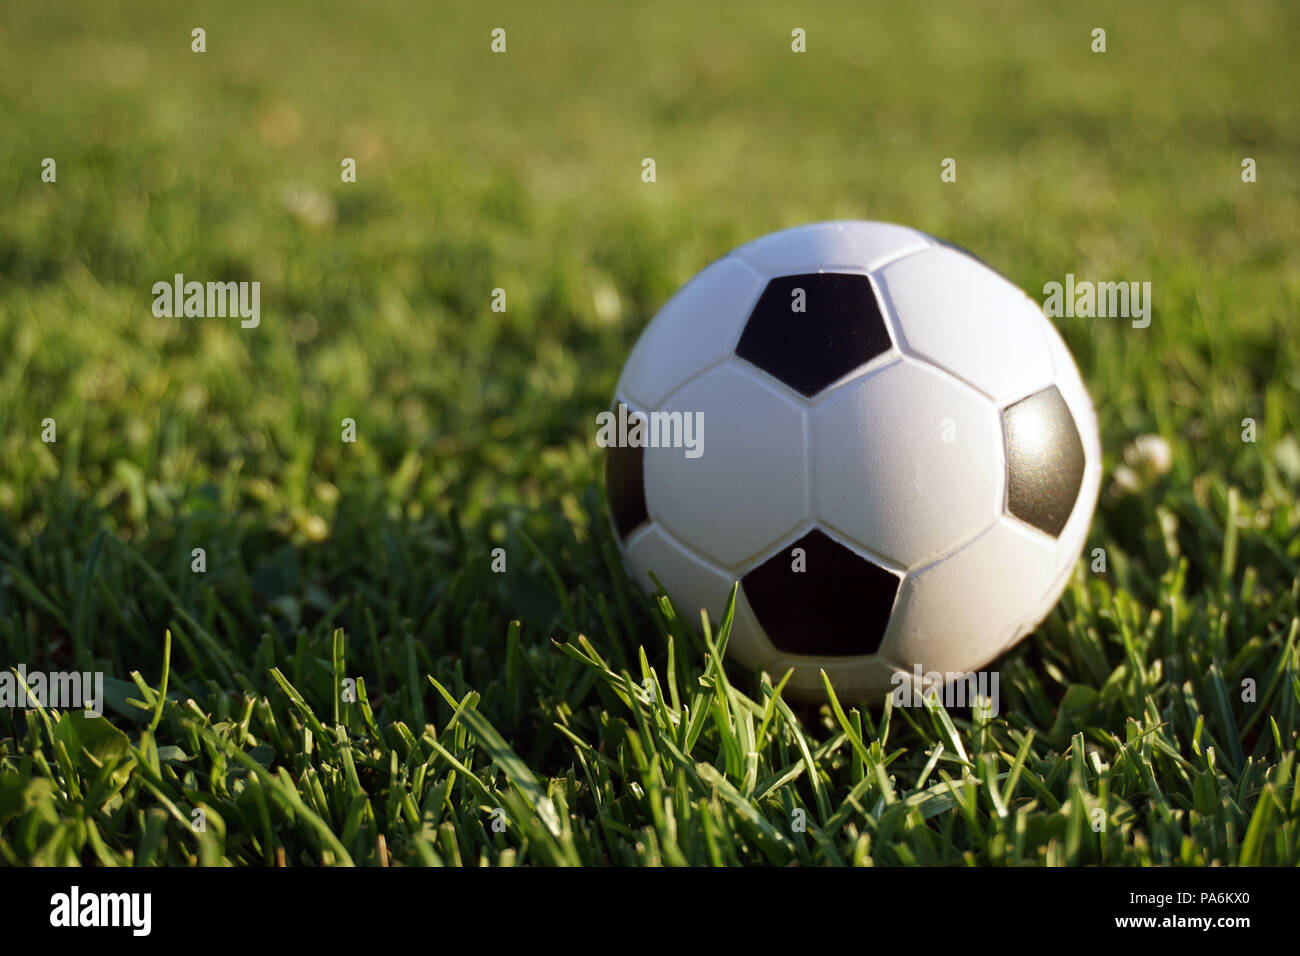 Mini fútbol en el campo de deportes Foto de stock